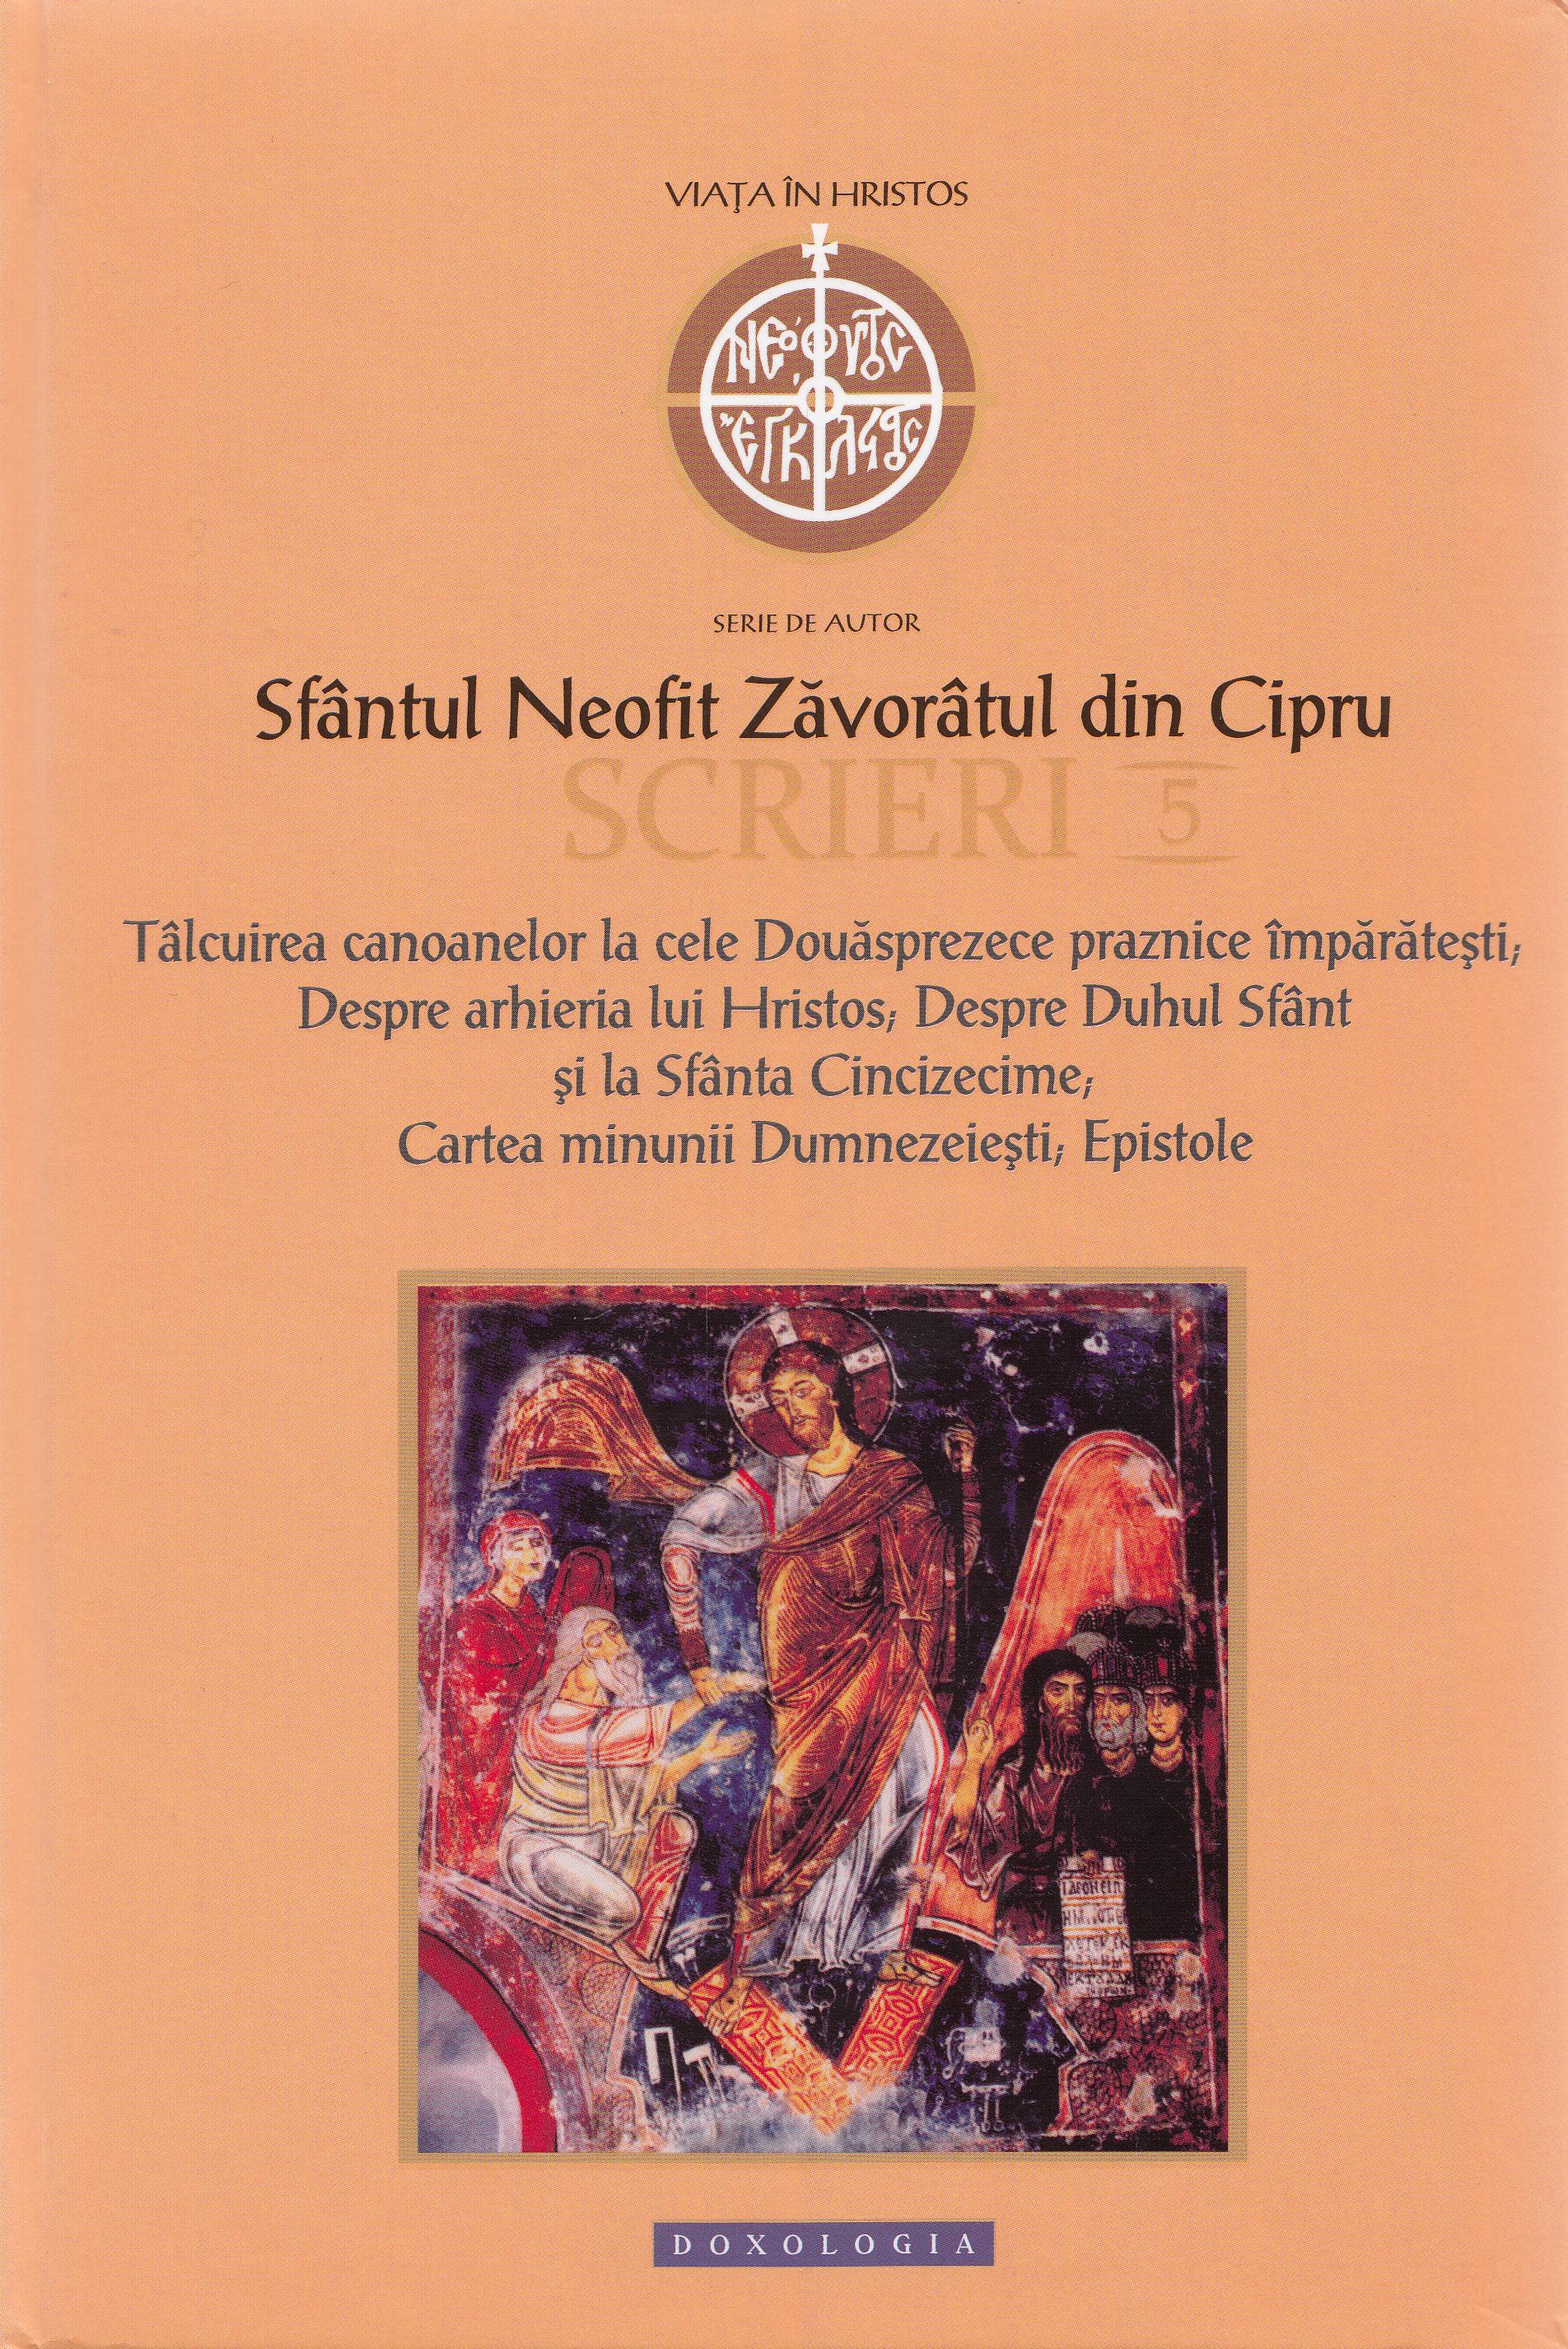 Scrieri 5: Talcuirea canoanelor - Sfantul Neofit Zavoratul din Cipru